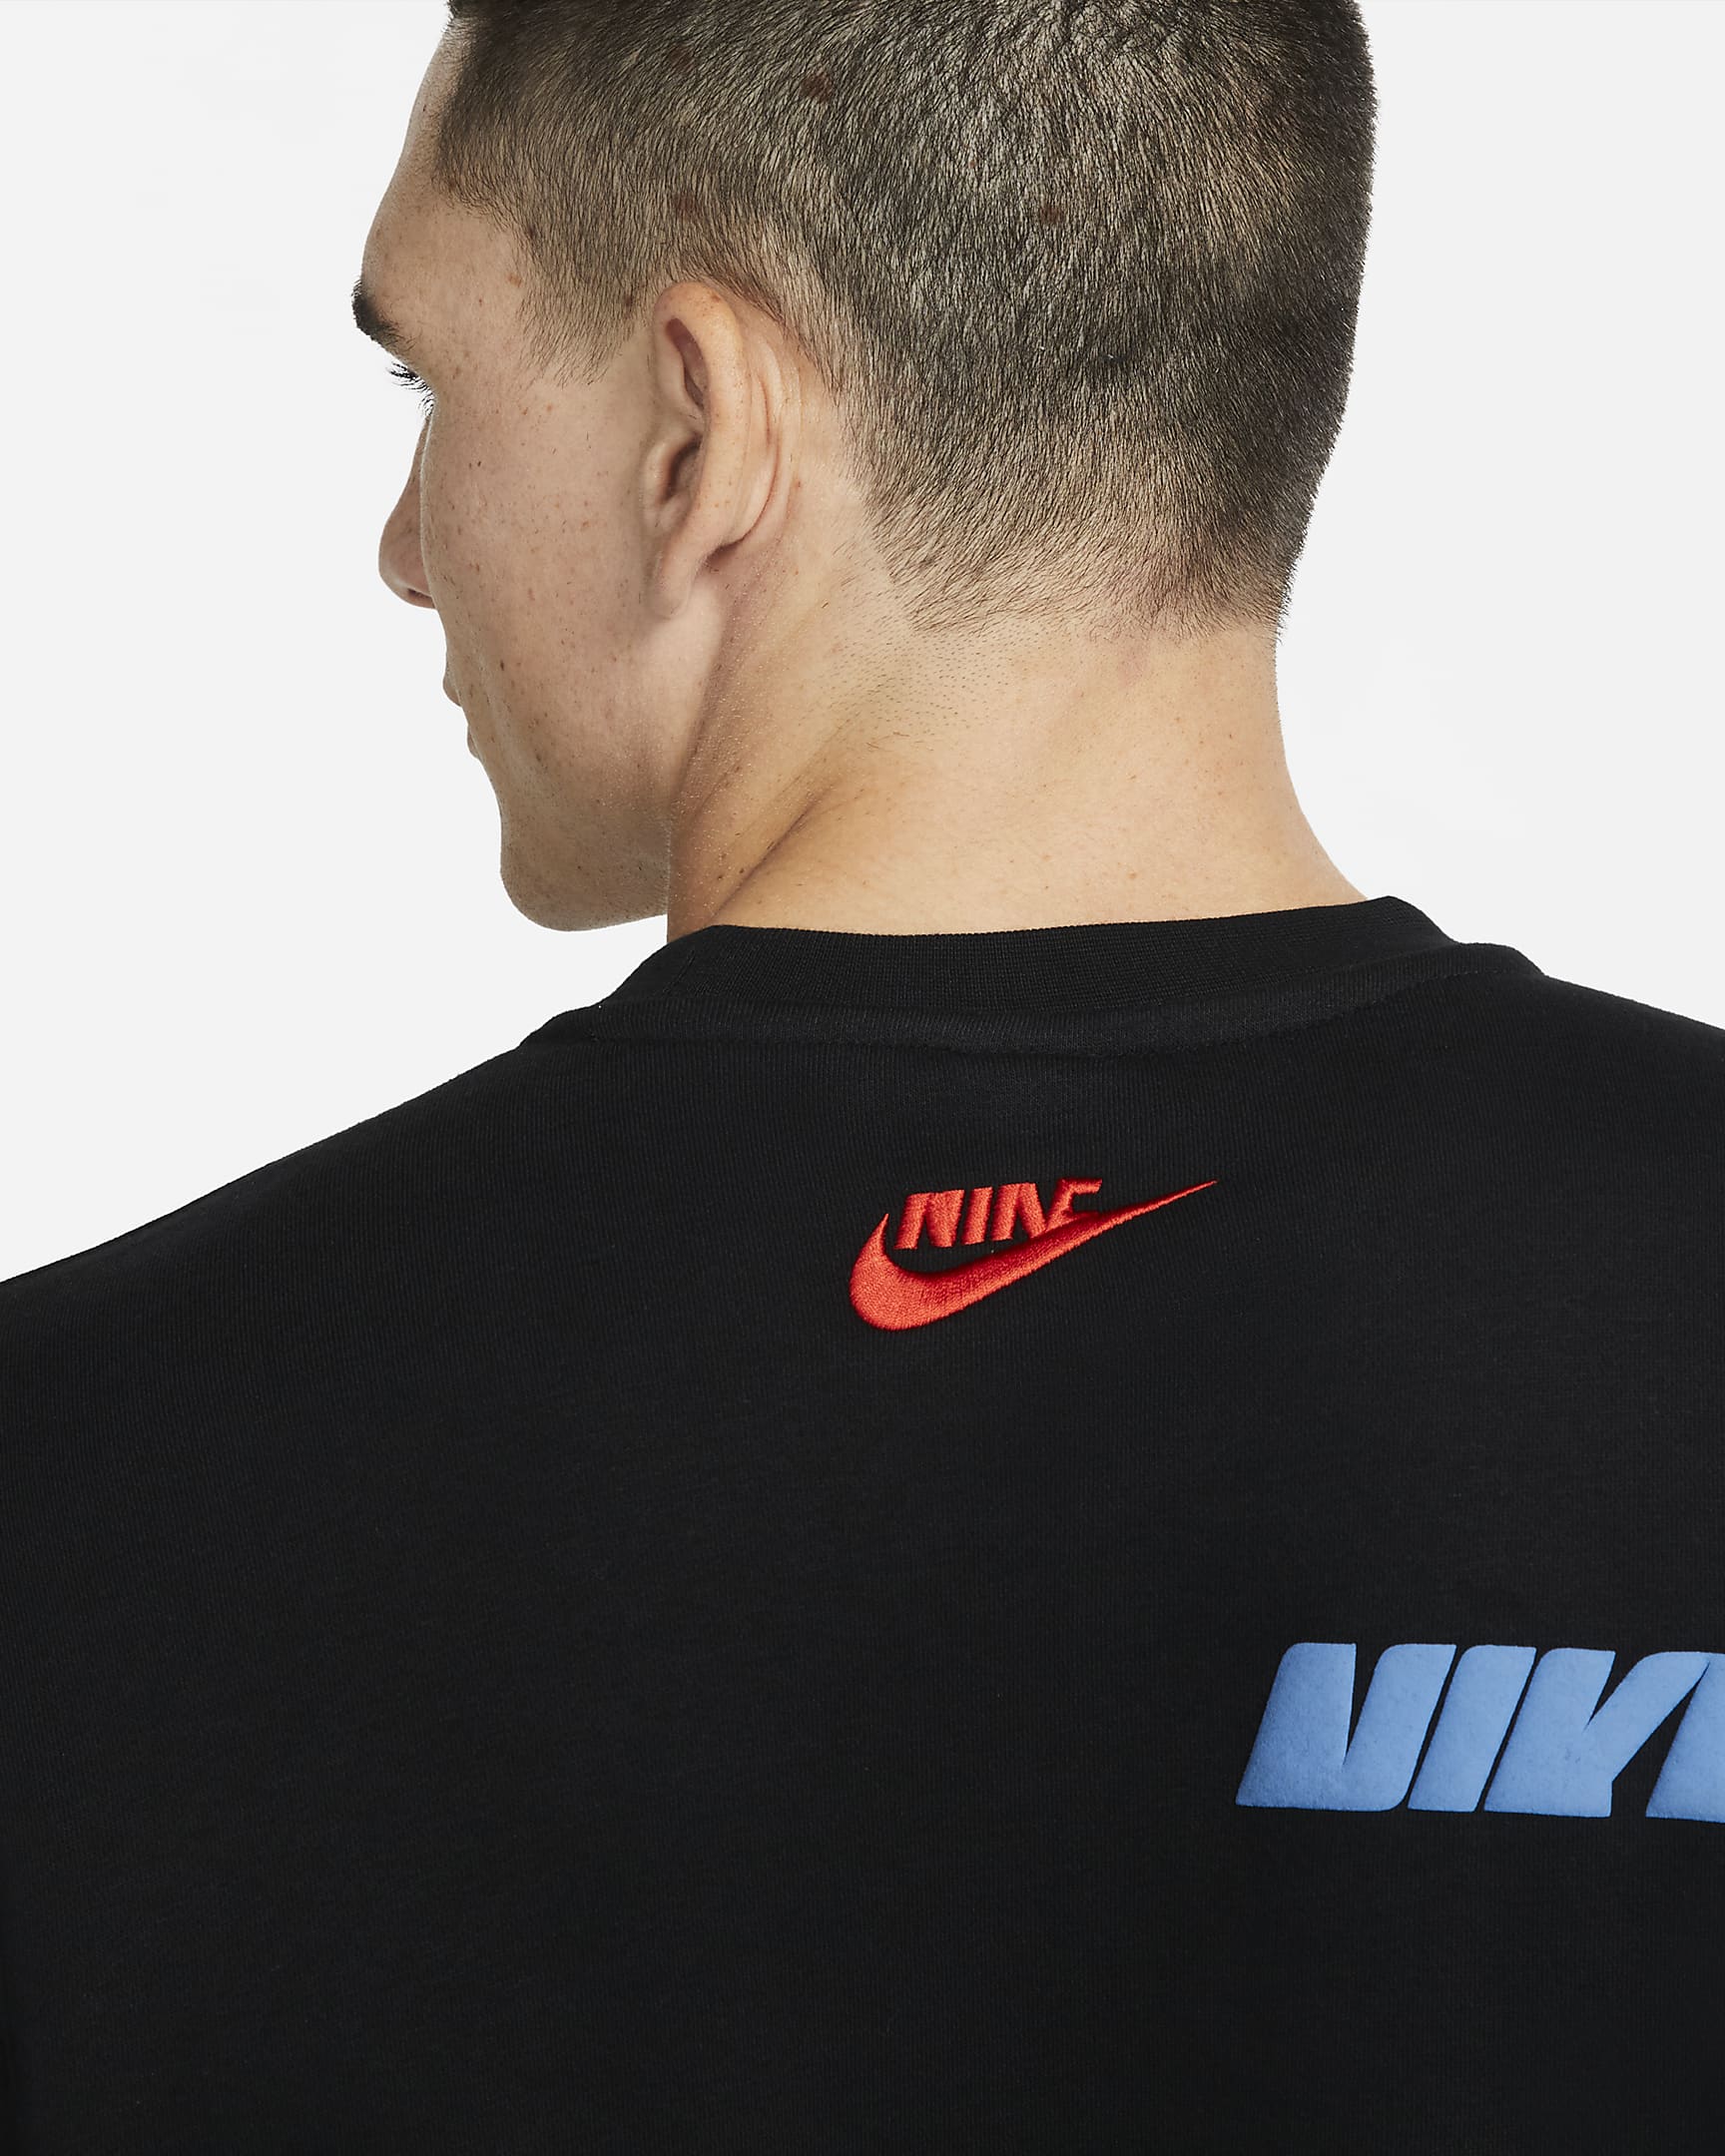 Nike Sportswear Sport Essentials+ Men's Fleece Crew. Nike.com